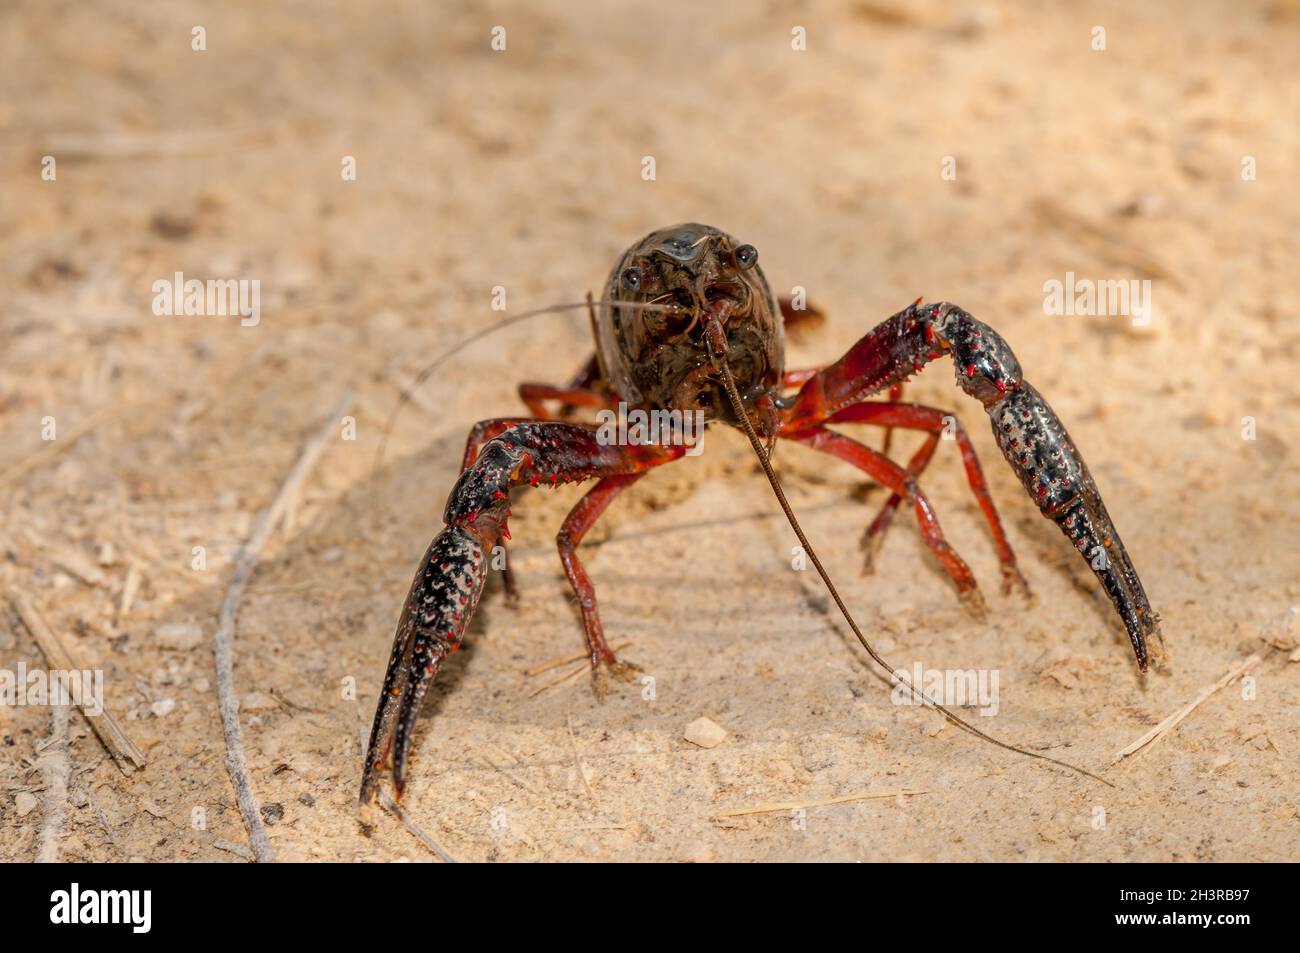 Procambarus clarkii, red swamp crayfish, aggressive position, invasive specie in ebro delta, Catalonia, Spain Stock Photo